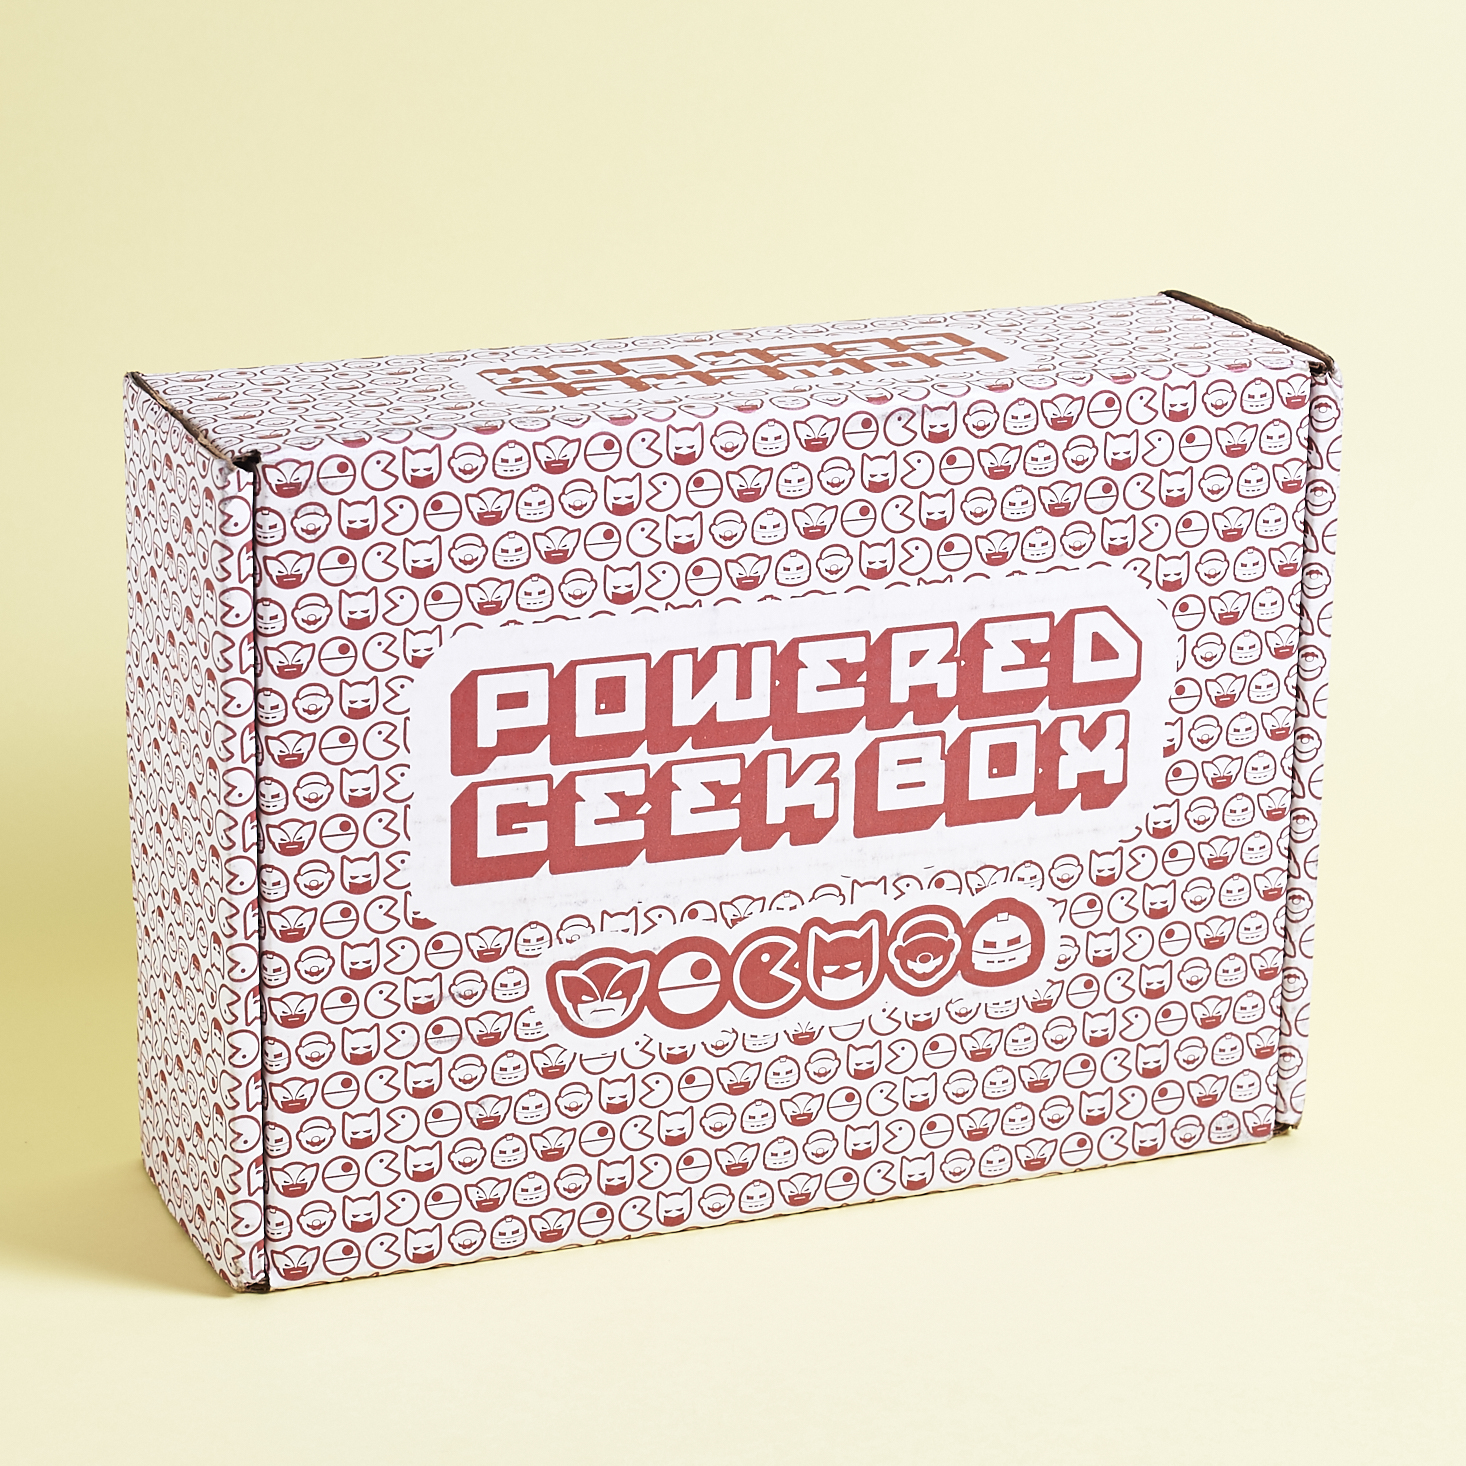 Powered Geek Box Subscription Box Review + Coupon – November 2016